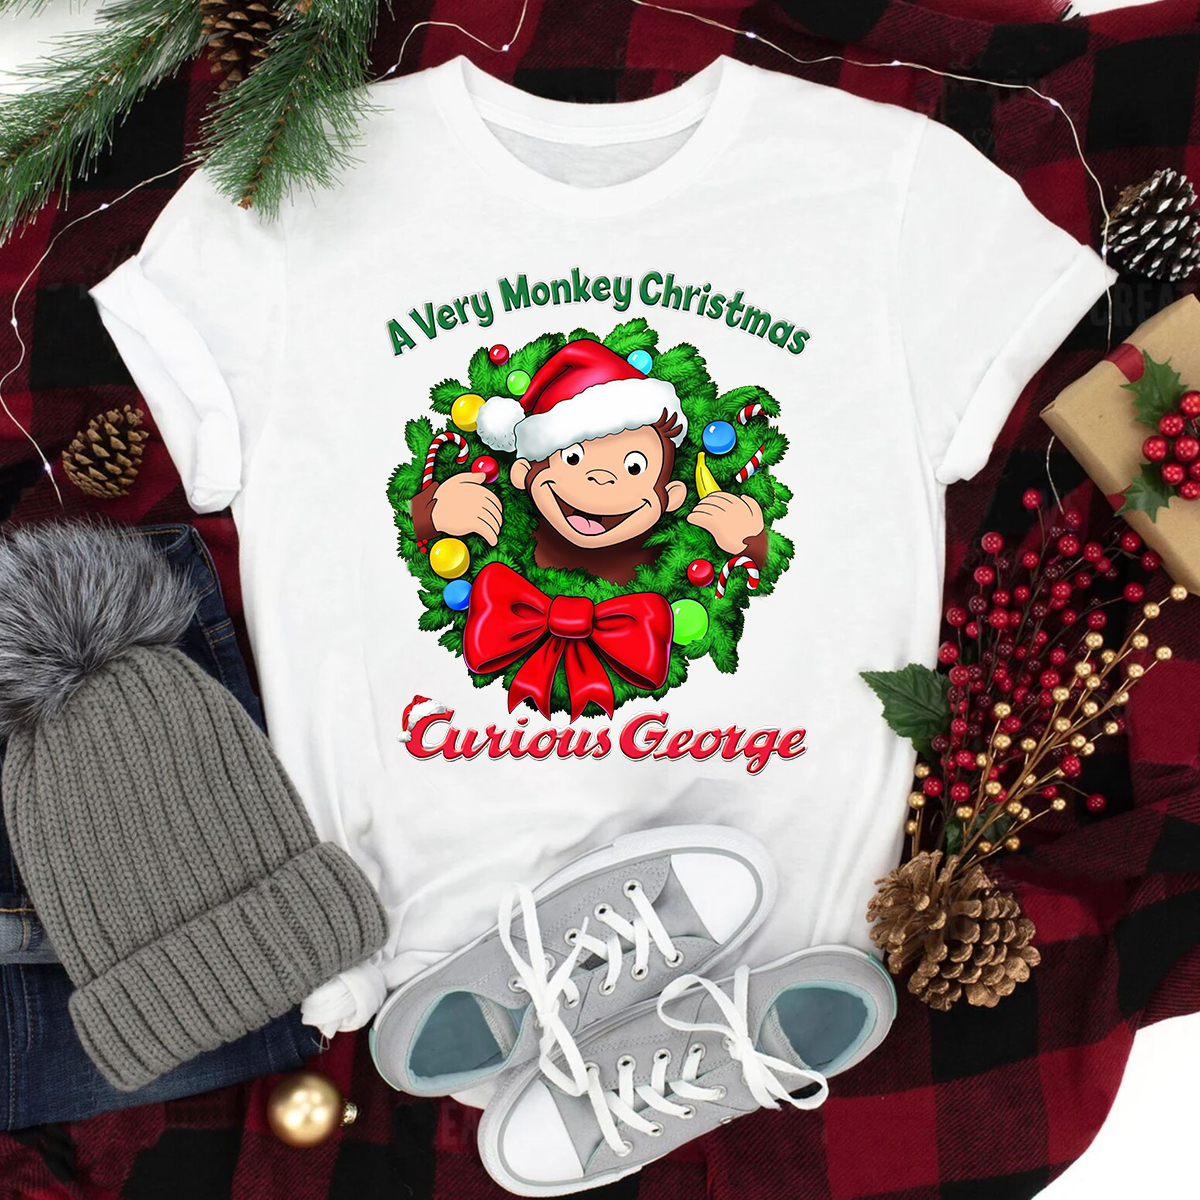 Curious George Christmas Shirt, Custom Curious George christmas gift, Customized Curious George Shirts, Family Tee, Monkey Christmas shirt